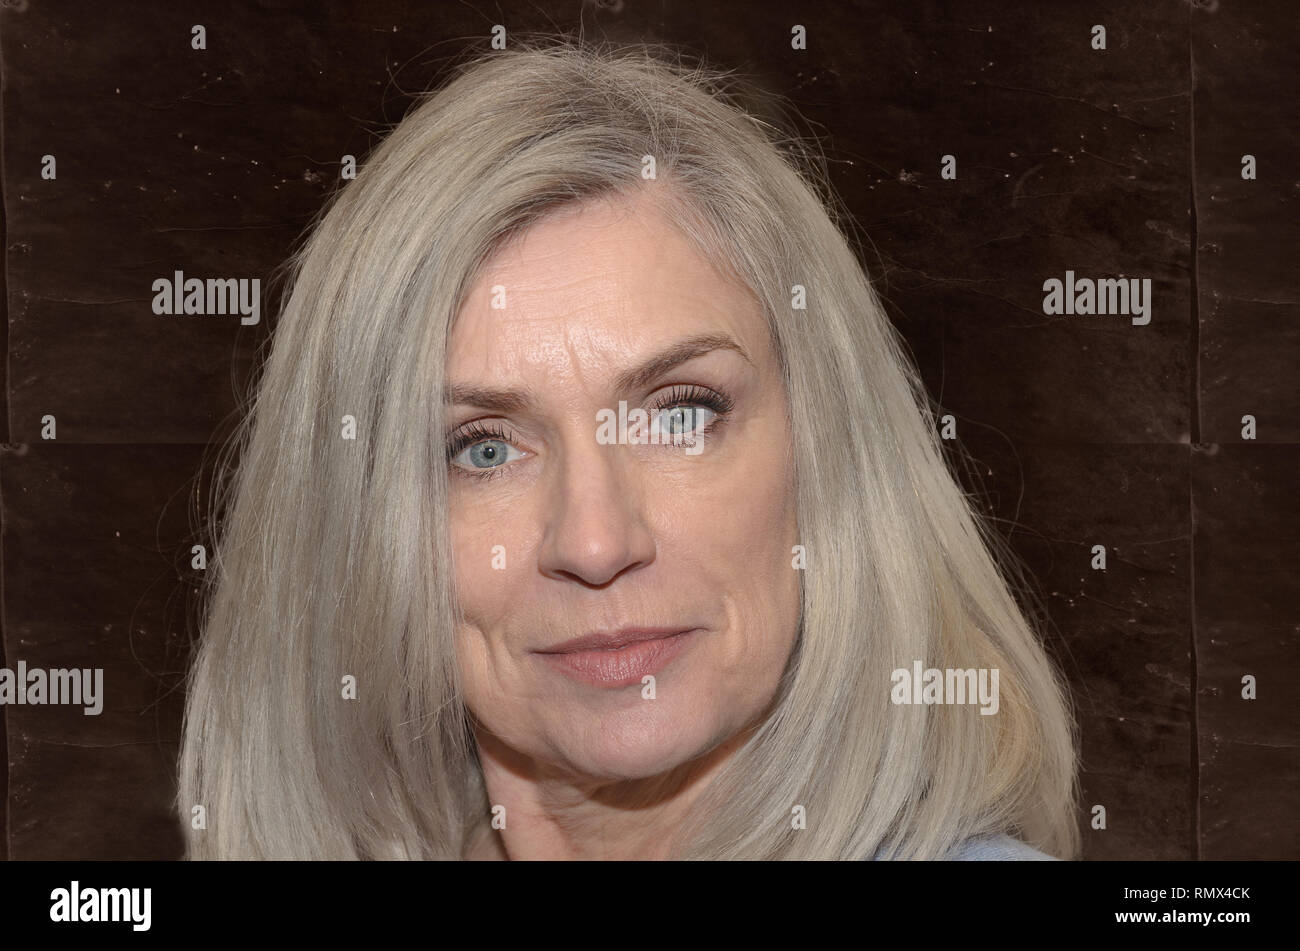 Attraktive Frau mittleren Alters mit langen blonden Haaren und blauen Augen in die Kamera mit einem ruhigen Lächeln in einer Nahaufnahme Kopf geschossen Stockfoto